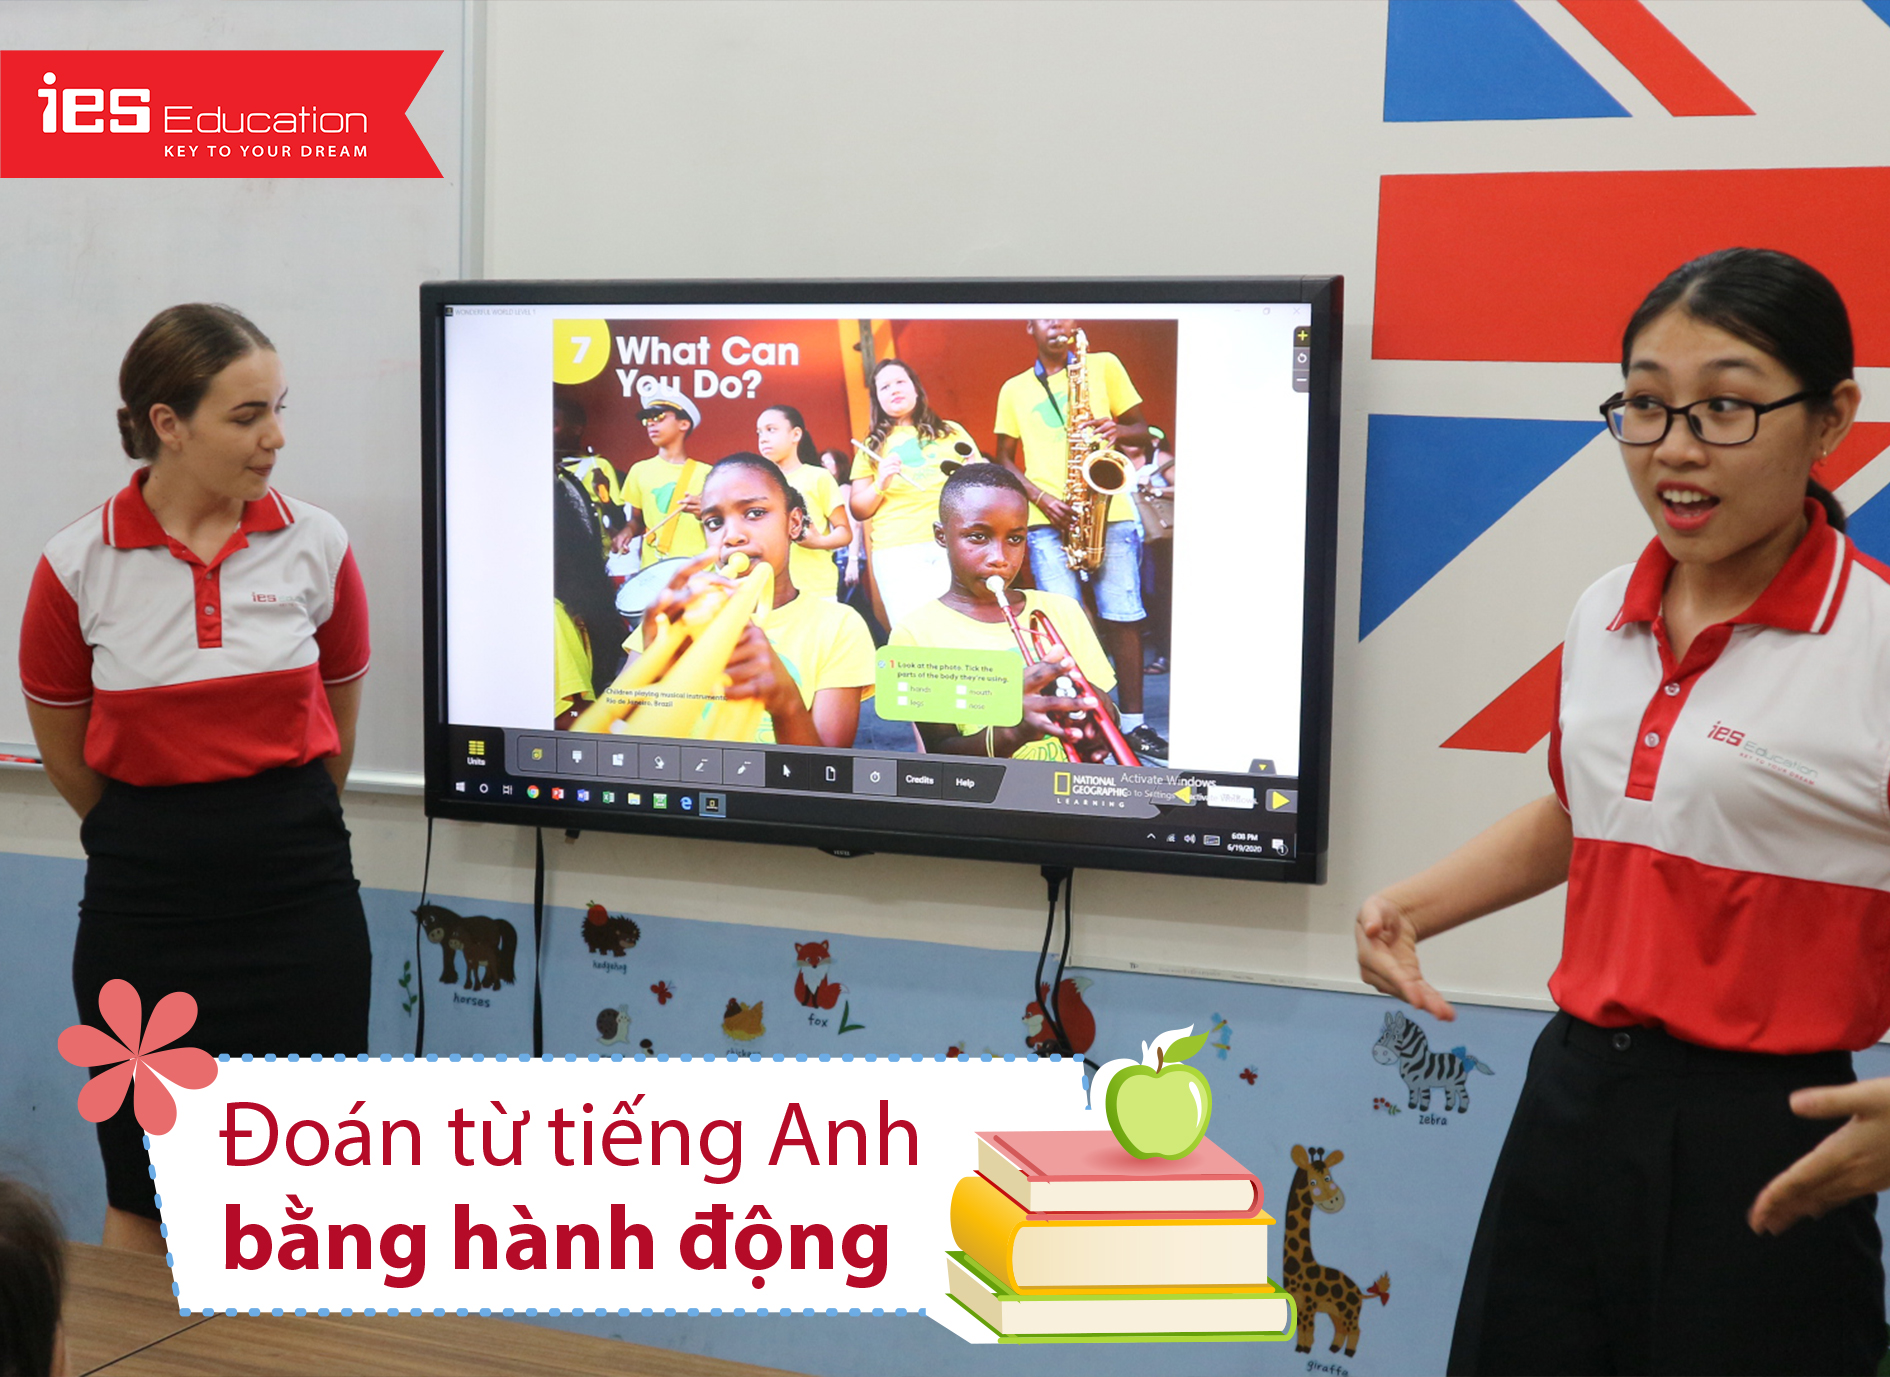 Trò chơi bổ ích giúp trẻ học tốt tiếng Anh - IES Education